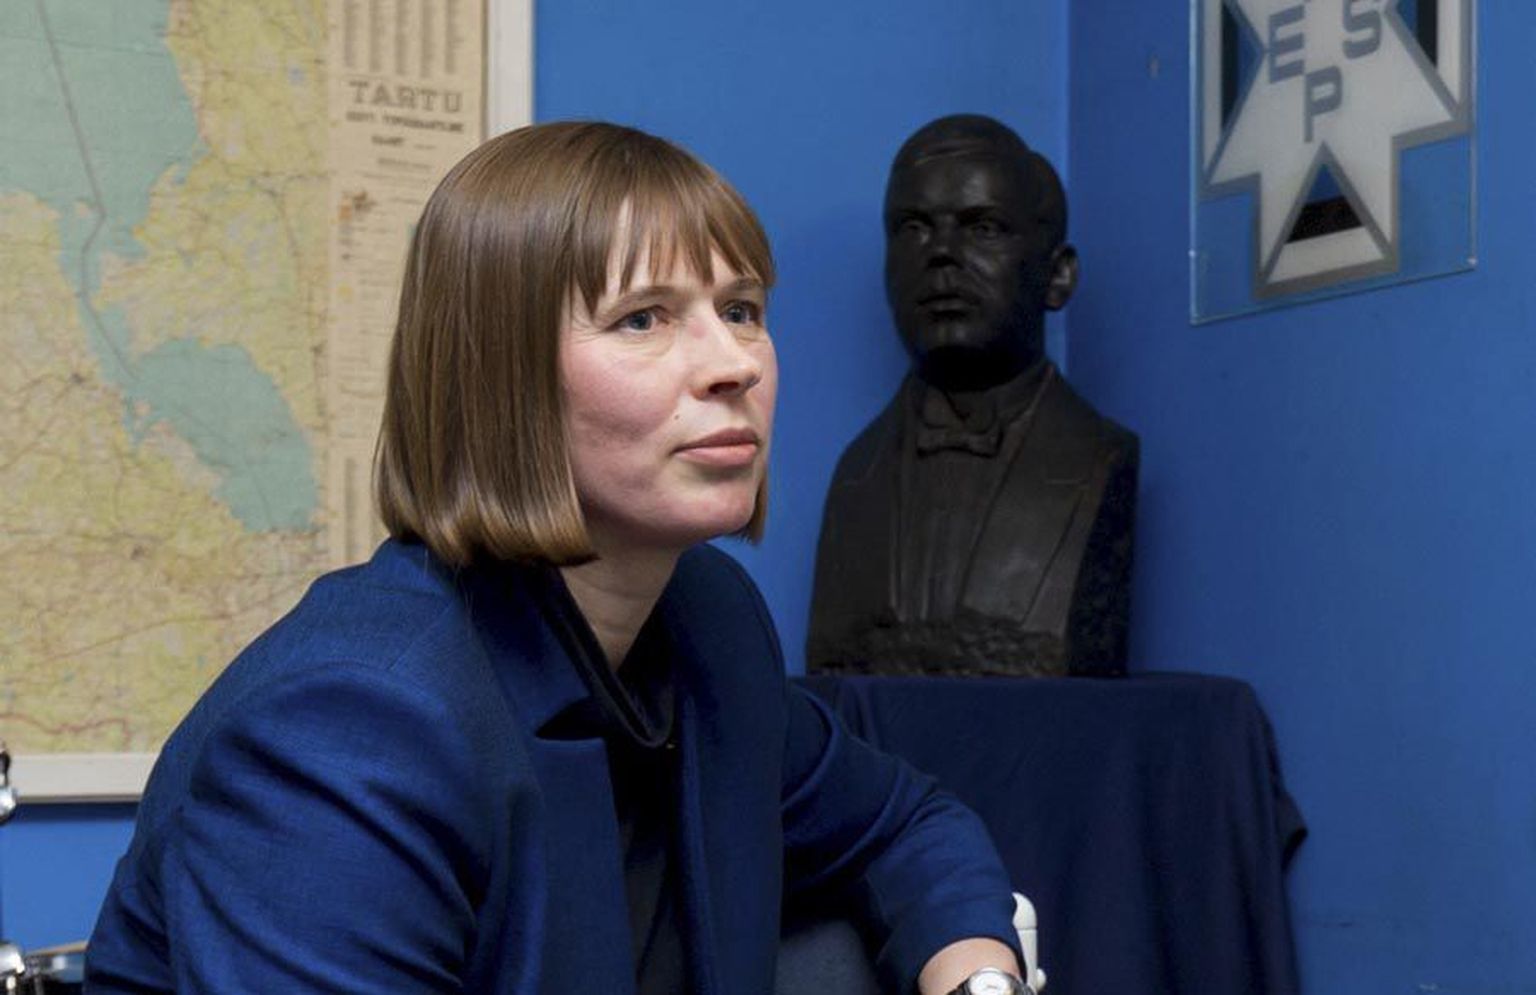 Pilistveres riigimees Jüri Vilmsi büsti ees Sakala usutlusele vastates avaldas Kersti Kaljulaid arvamust, et Eesti riik ei peaks Konstantin Pätsile monumenti püstitama.